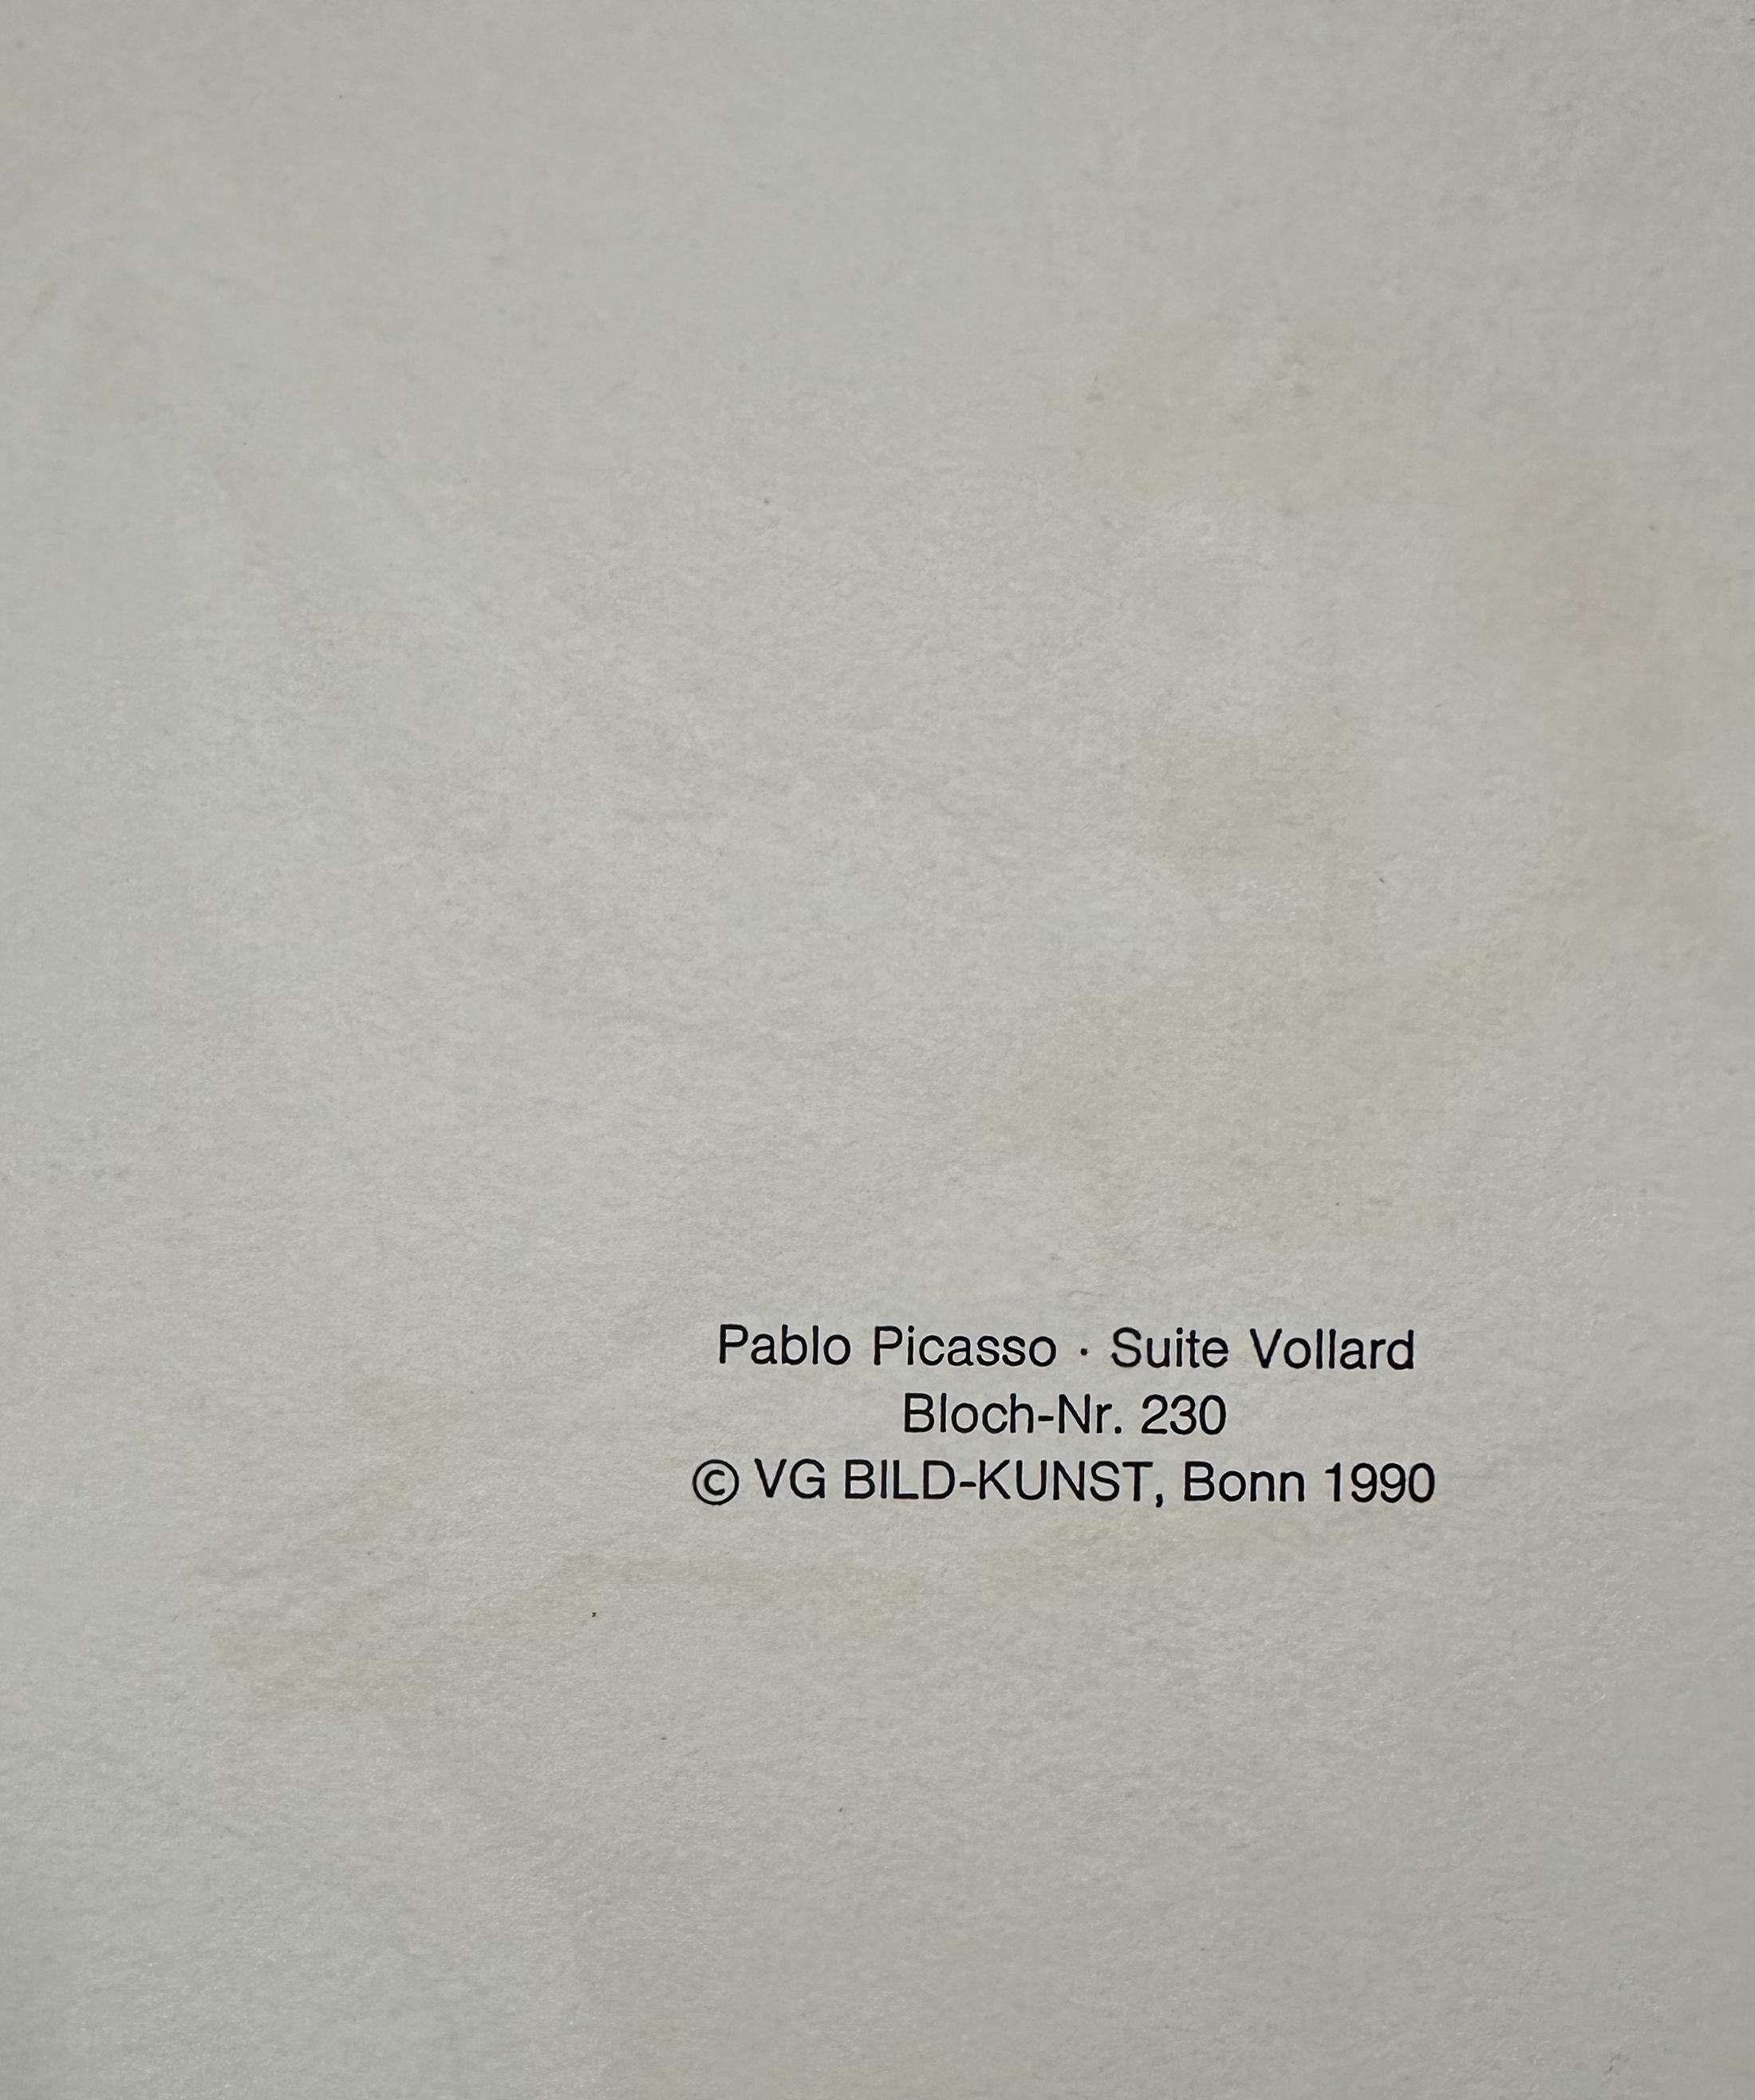 Pablo Picasso, Faune dévoilant une Femme - Modern Print by (after) Pablo Picasso